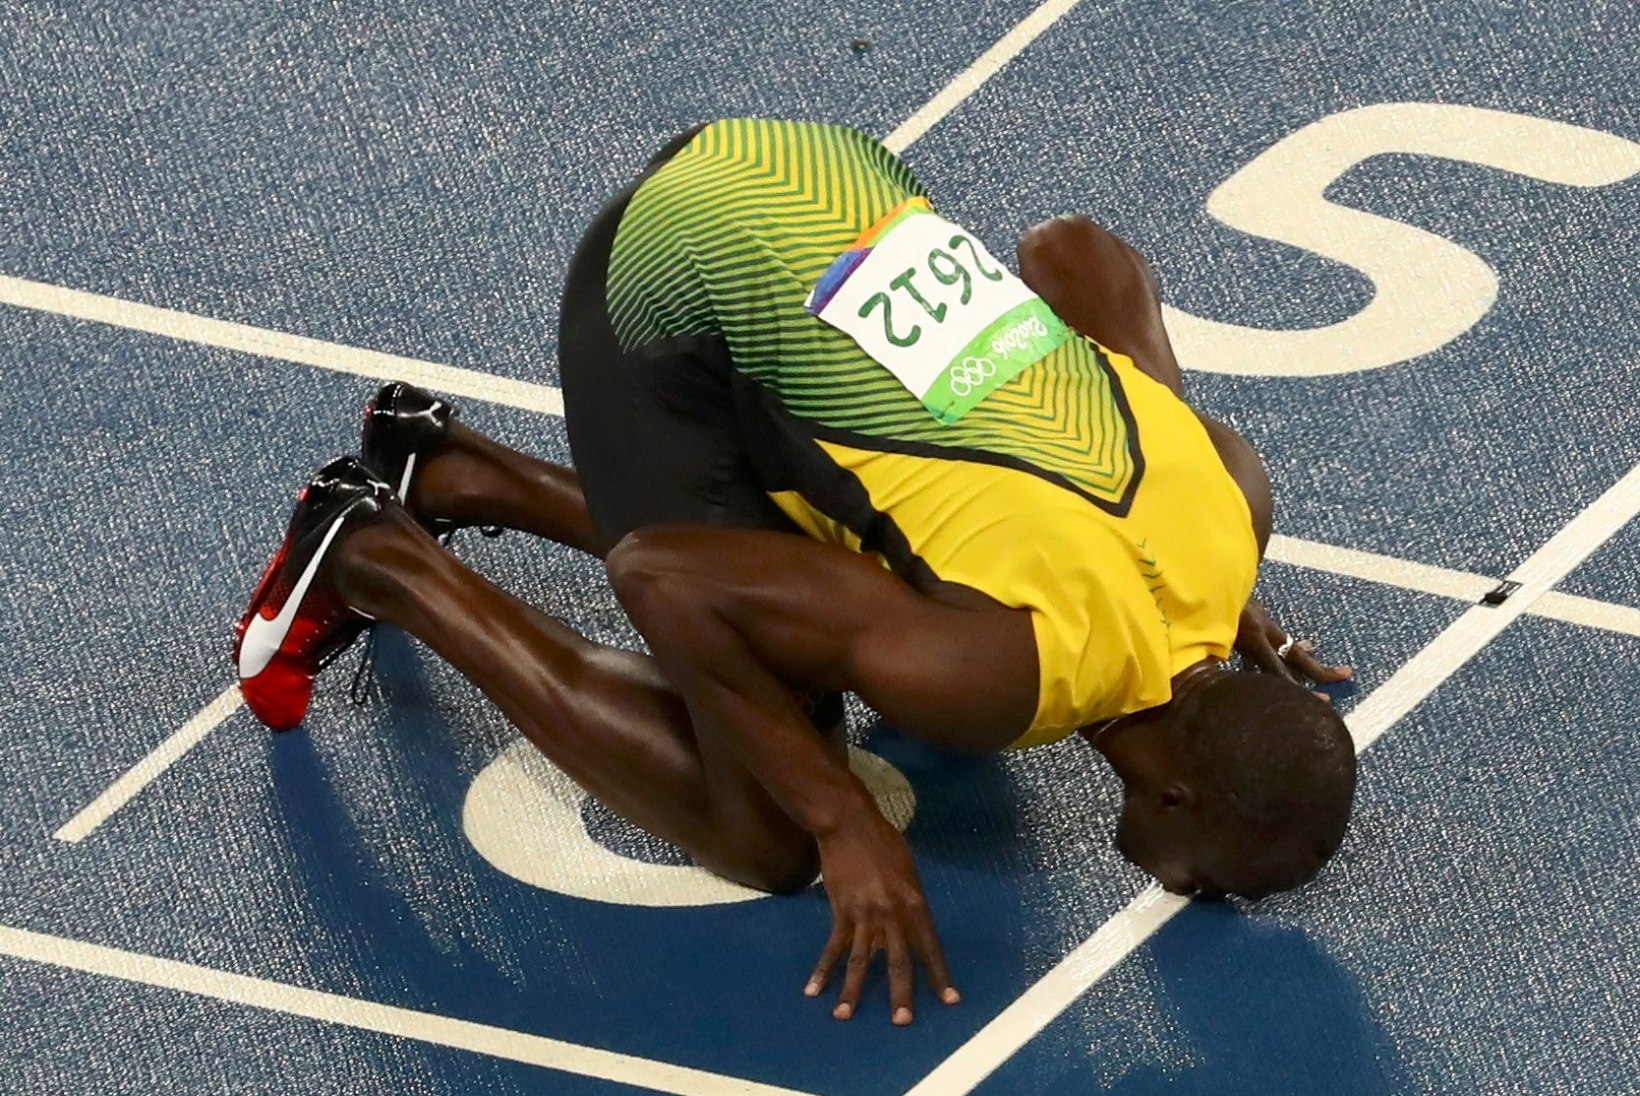 STATISTIKAPOMM | OM-i 13. võistluspäev: Bolt nihutab taaskord piire